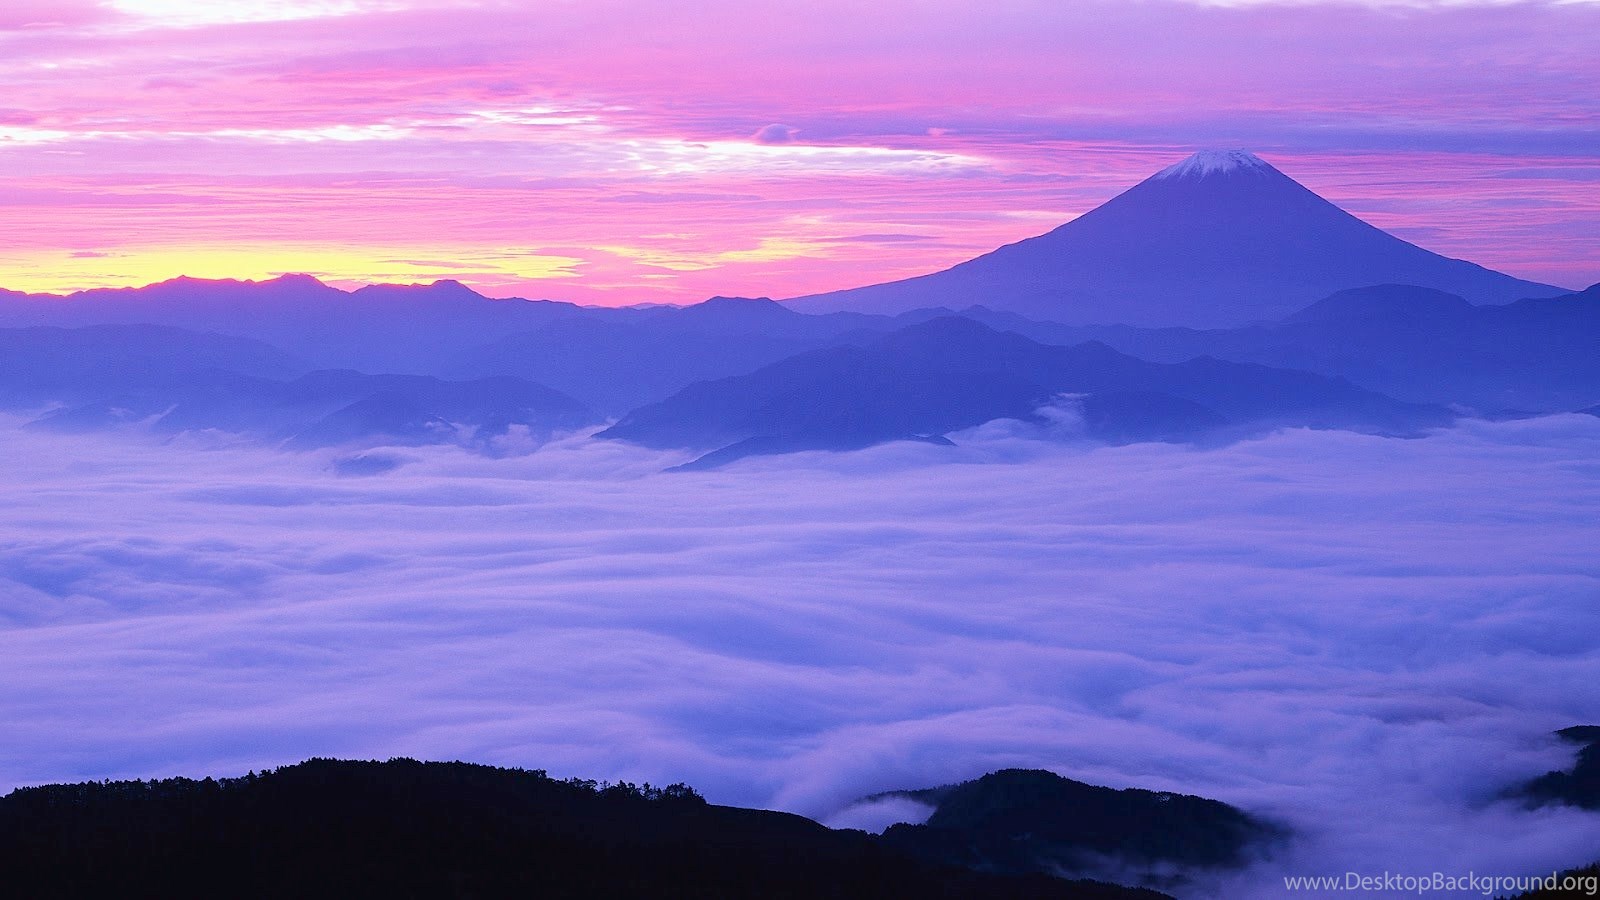 New blog pics: Mt Fuji Wallpaper HD Desktop Background